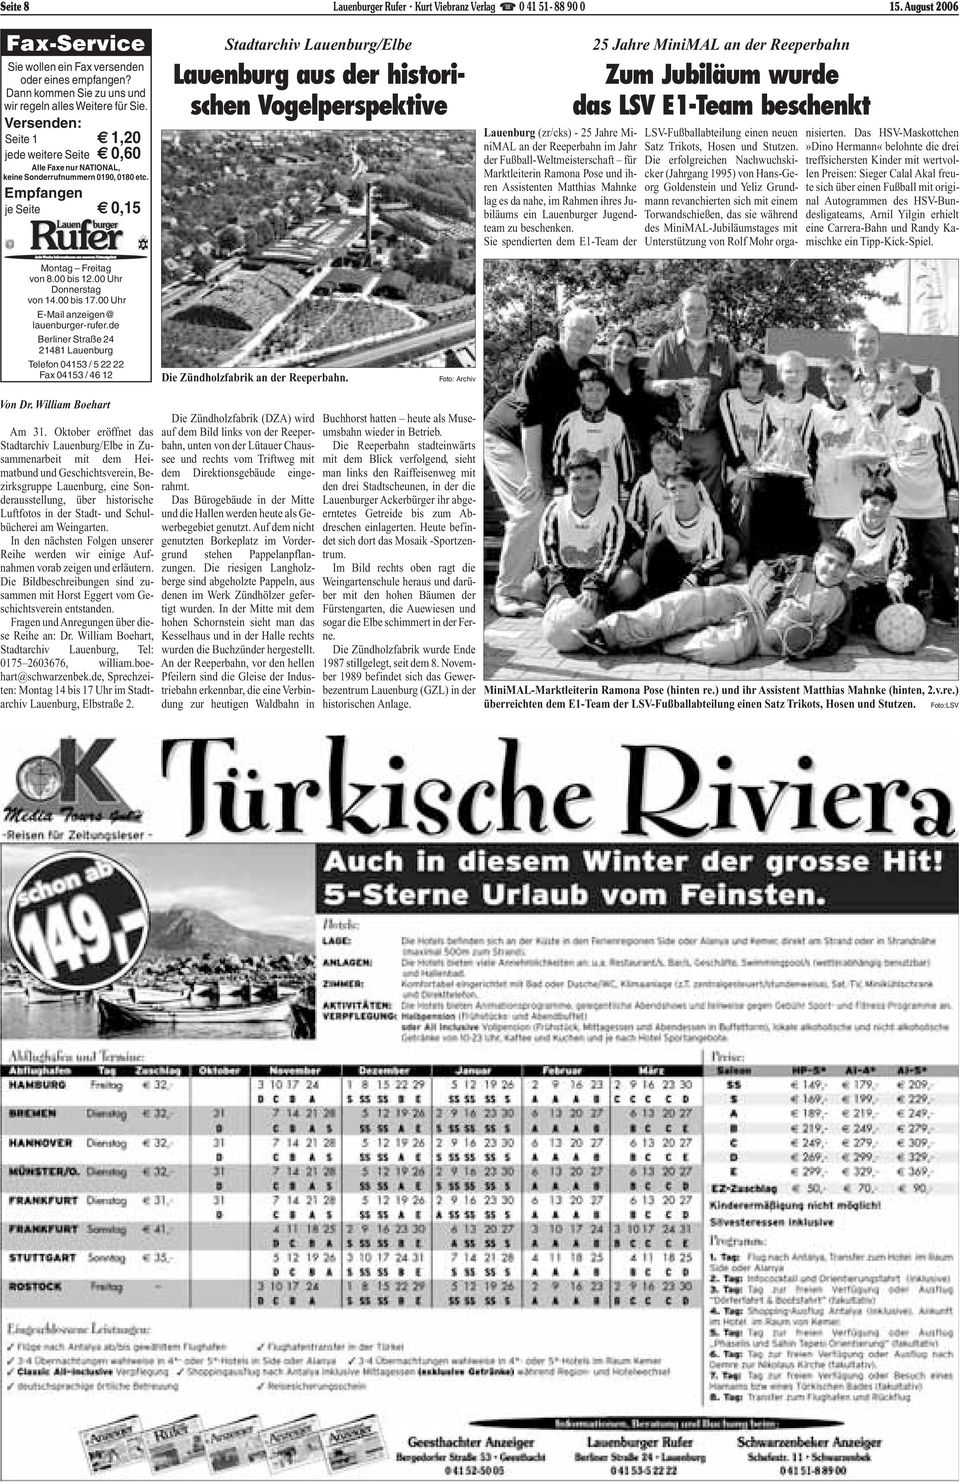 Empfangen je Seite 0,15 Stadtarchiv Lauenburg/Elbe Lauenburg aus der historischen Vogelperspektive Lauenburg (zr/cks) - 25 Jahre MiniMAL an der Reeperbahn im Jahr der Fußball-Weltmeisterschaft für